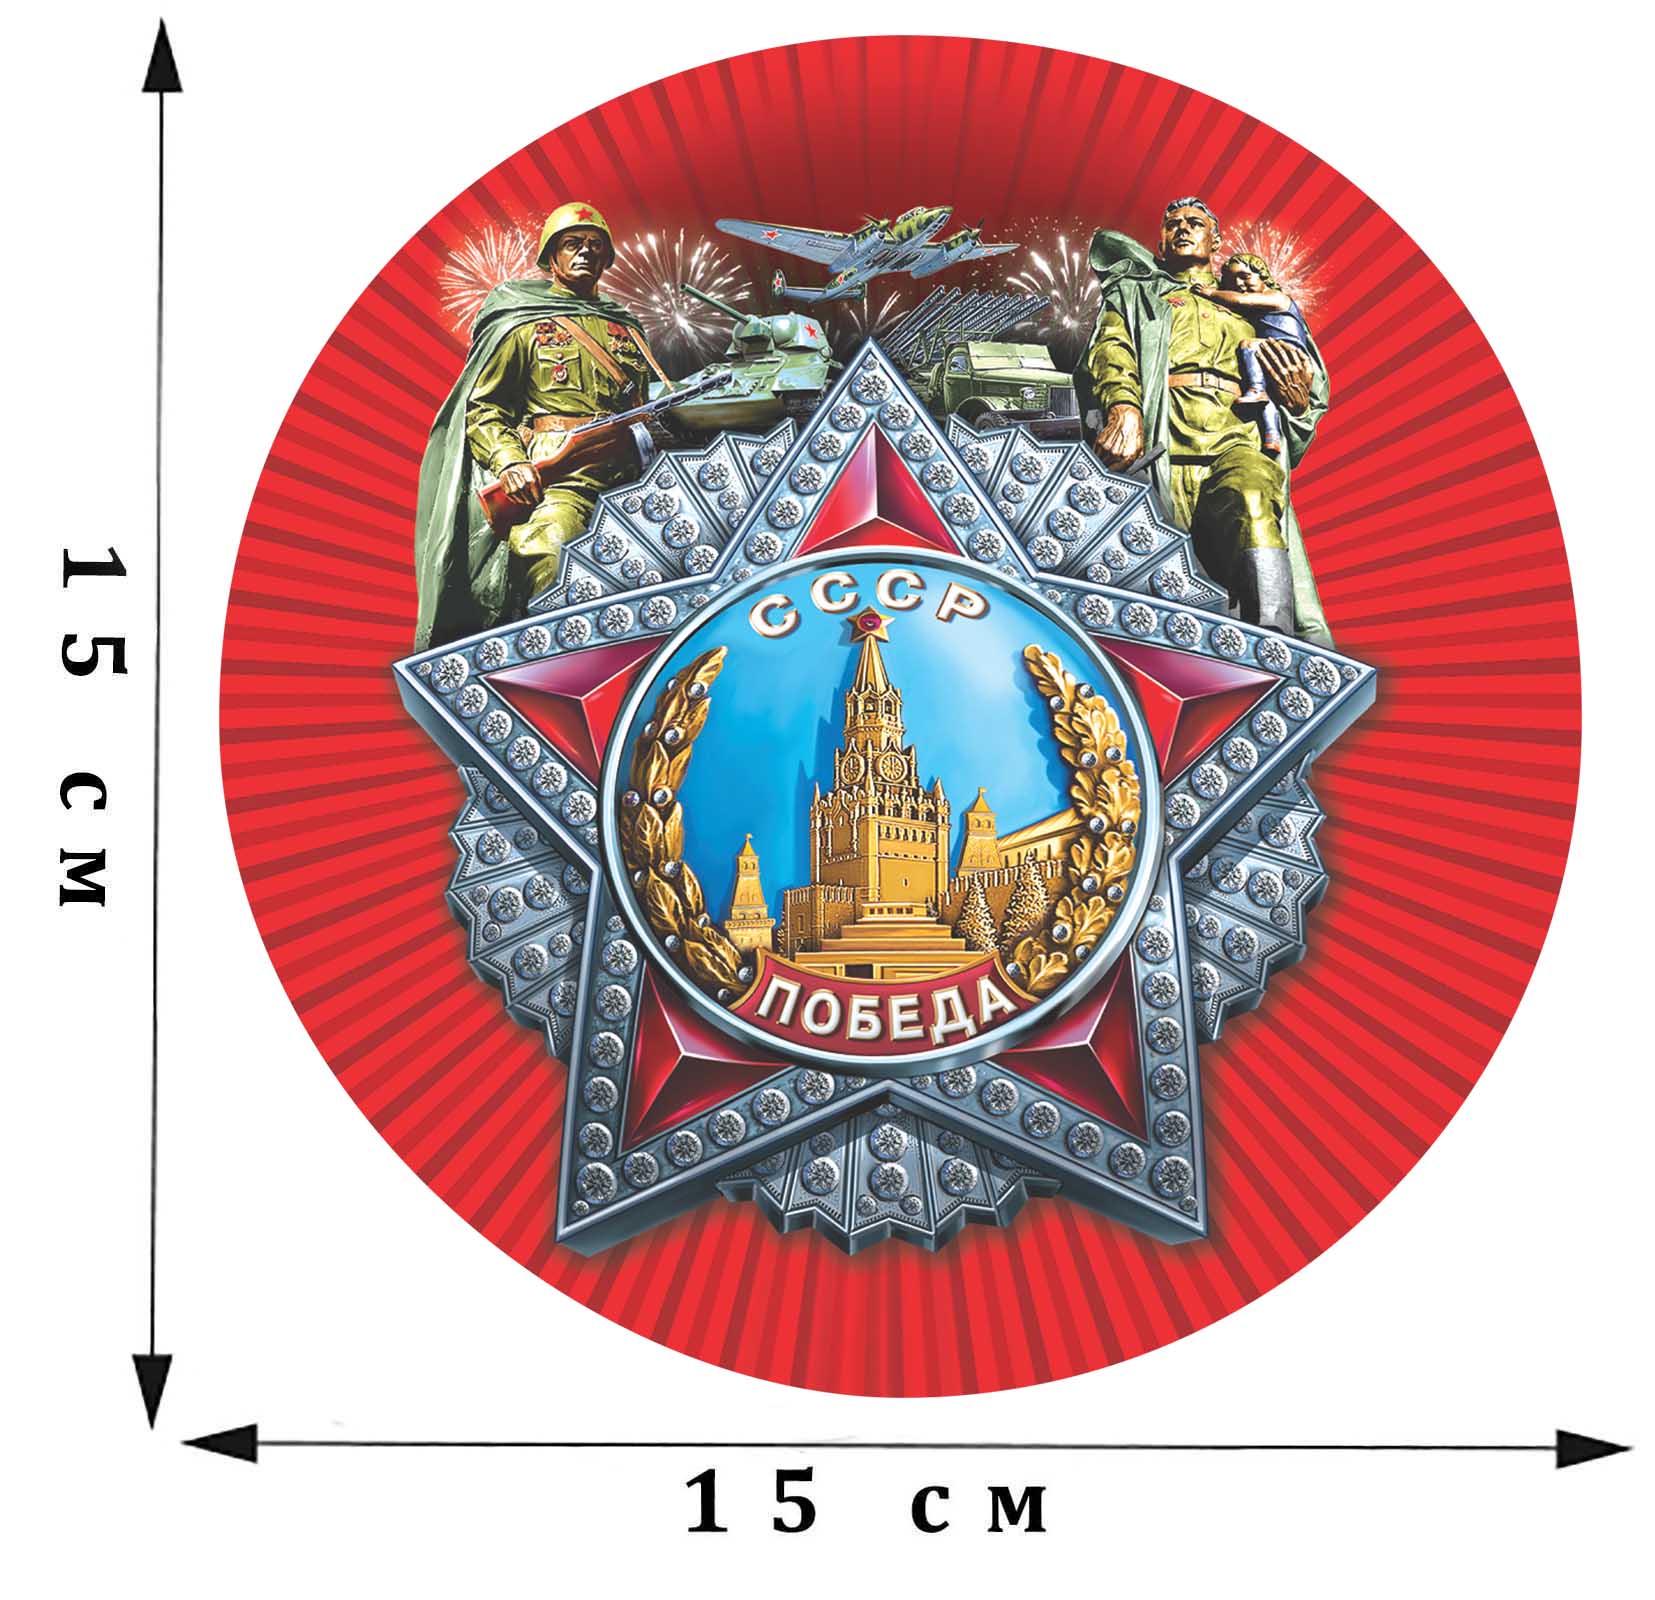 Наклейка на авто «Орден Победы СССР» к 9 мая размером 15 х 15 см